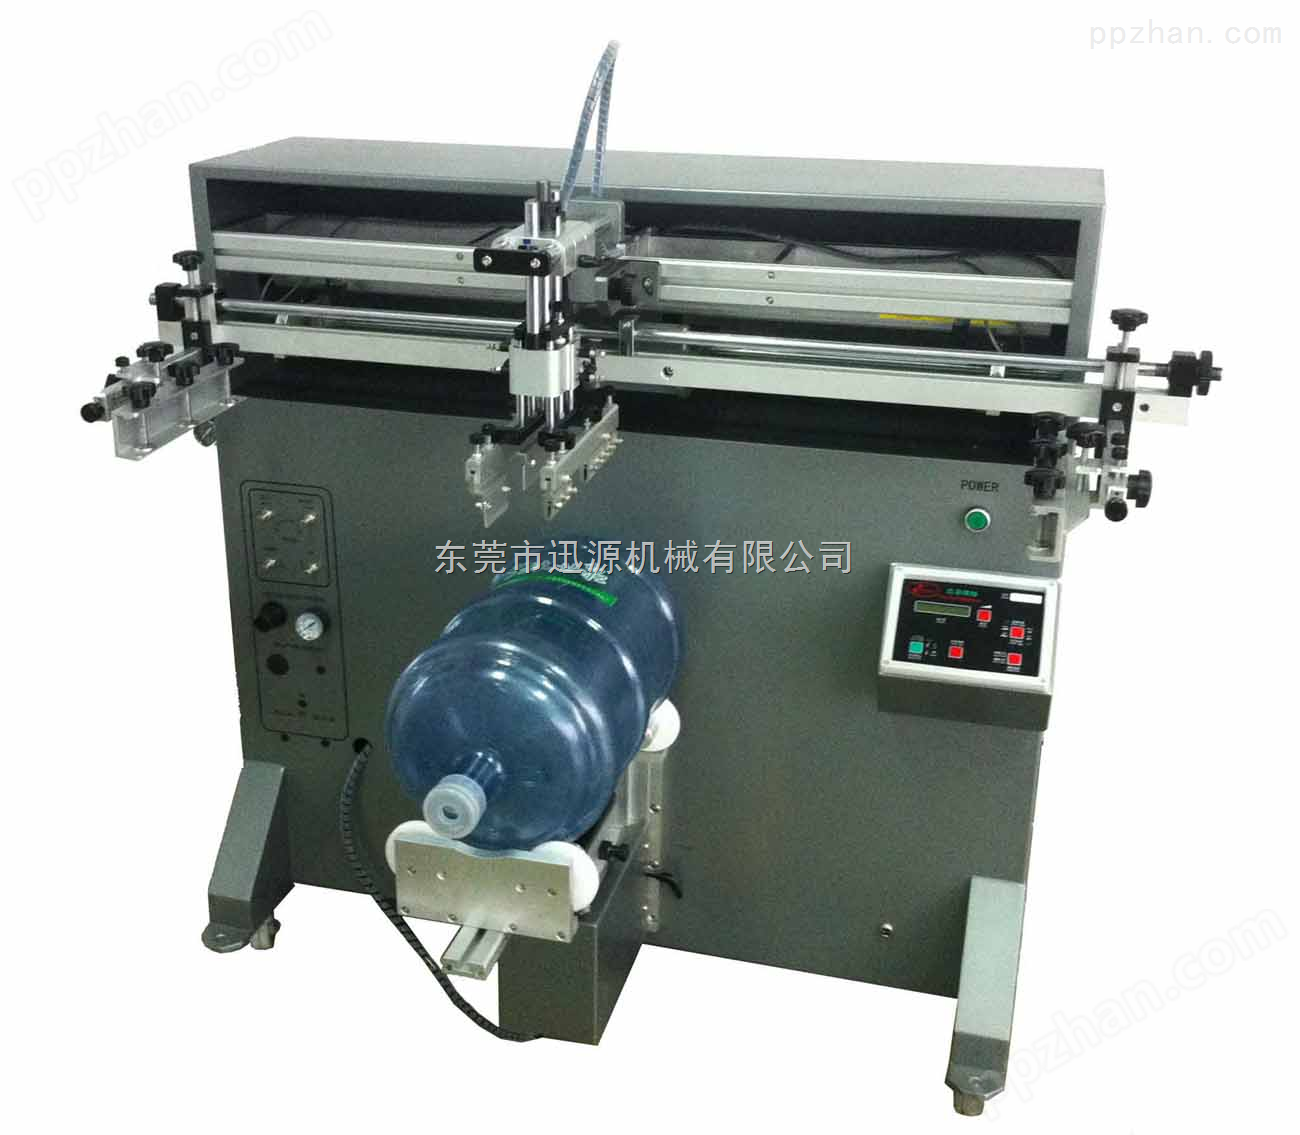 印刷印刷圆面、弧面、等印刷物件，东莞高品质丝印机，迅源S-900R曲面丝印机，